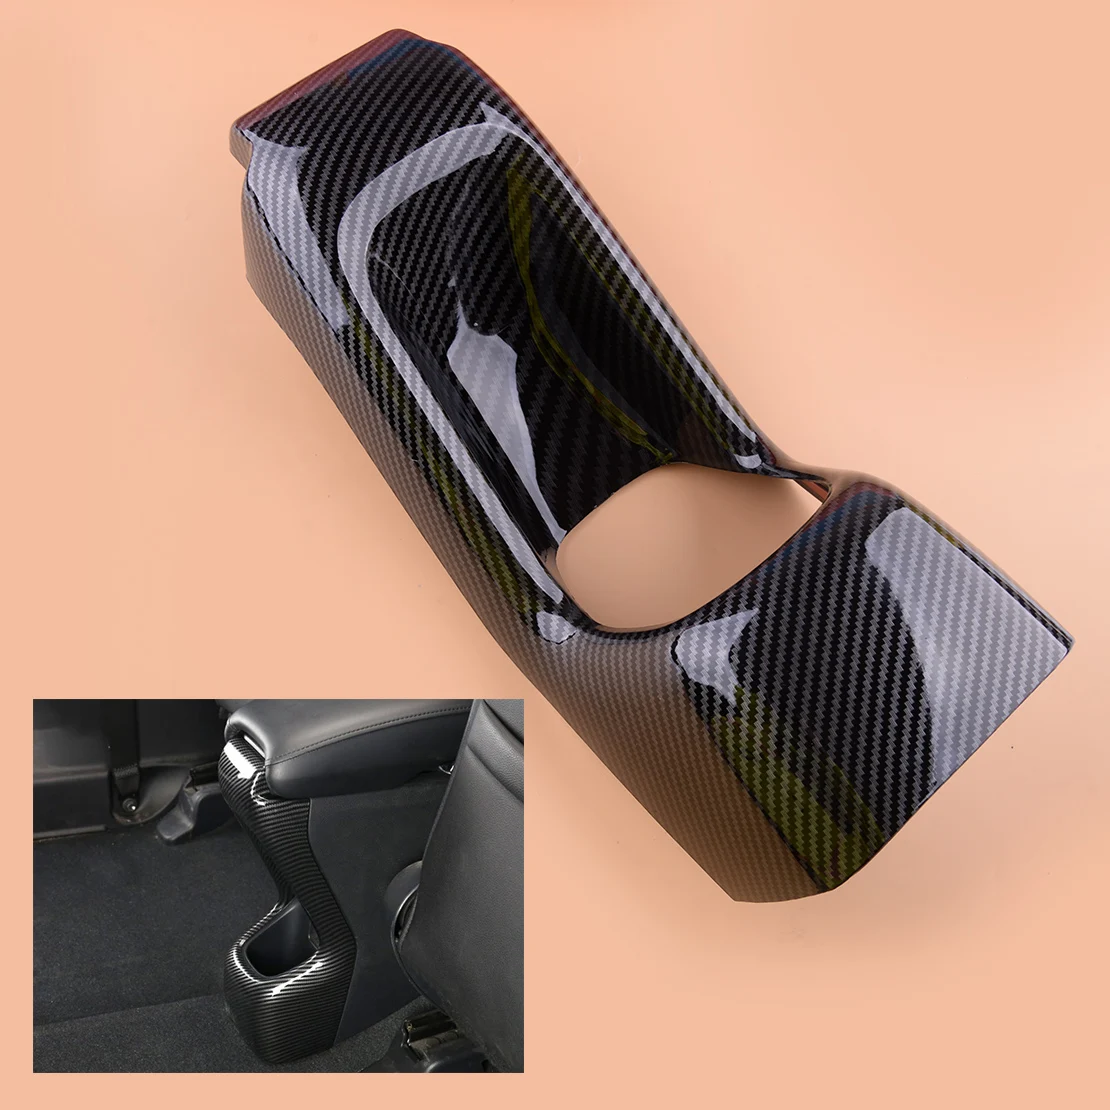 

Текстурный стильный подлокотник beler из углеродного волокна для заднего сиденья, Противоударная обшивка, подходит для Honda HR-V HRV Vezel 2016 2017 2018 2019